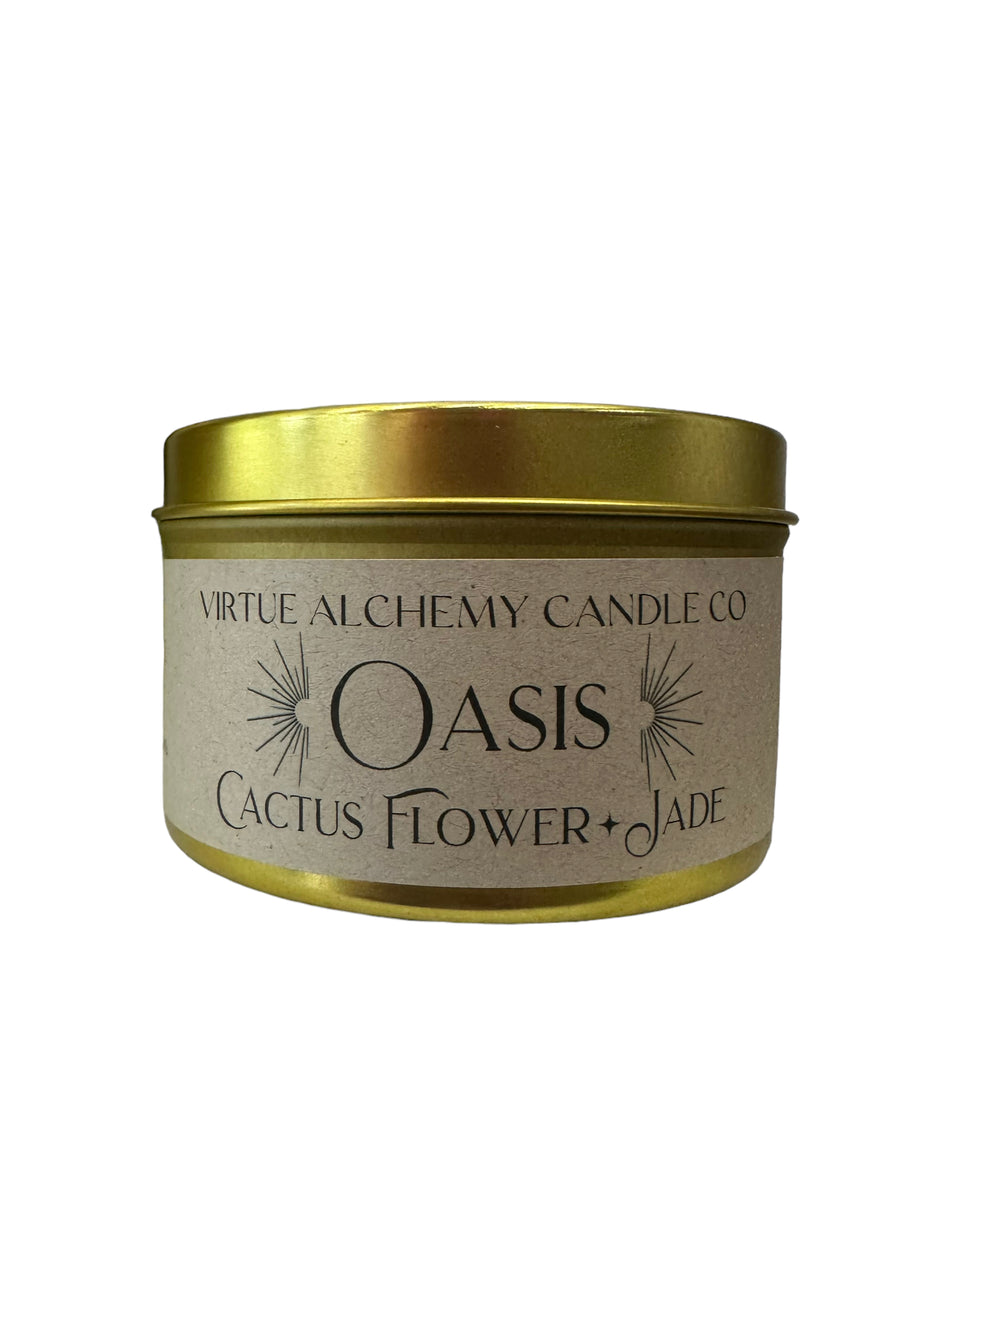 Oasis | Cactus Flower & Jade